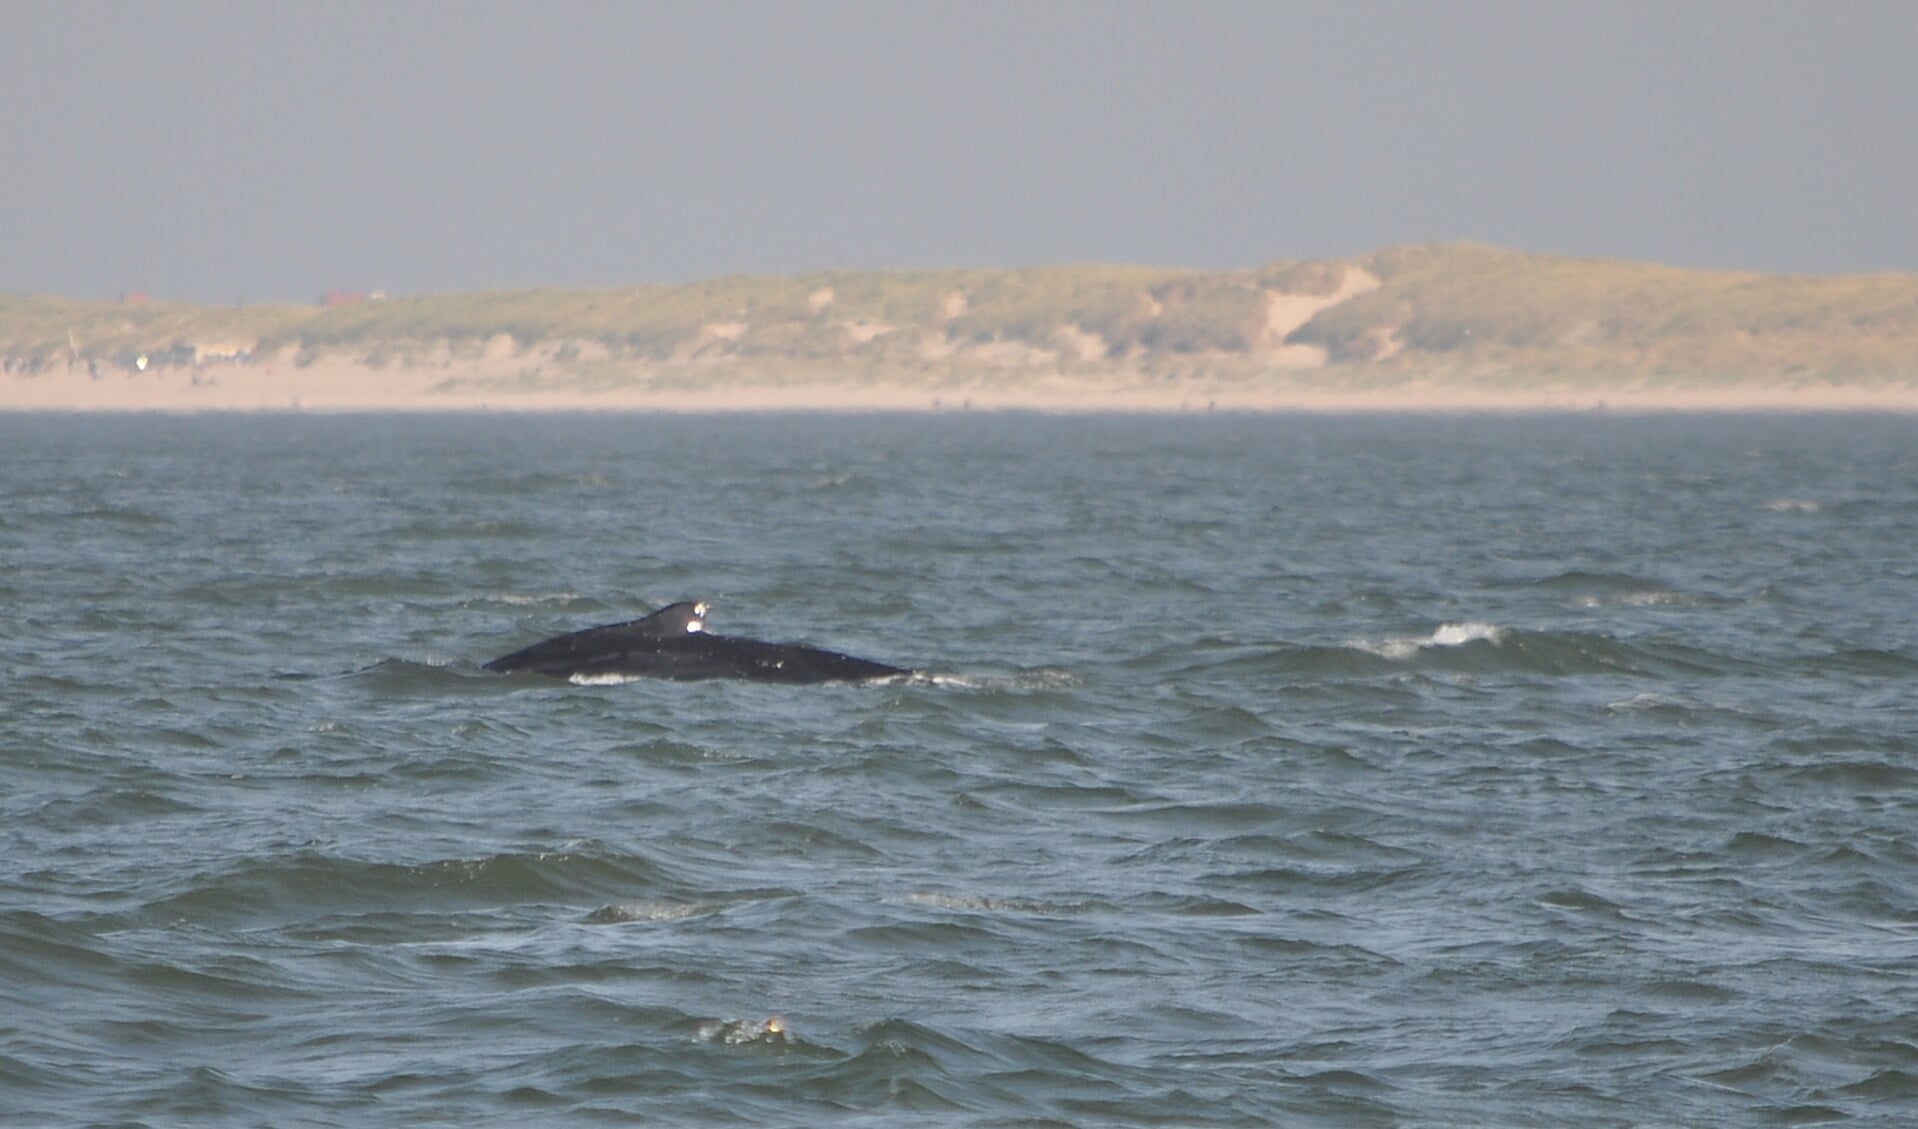 Ter illustratie; foto van een walvis voor de Texelse kust (niet van de betreffende dwergvinvis die één keer opdook).